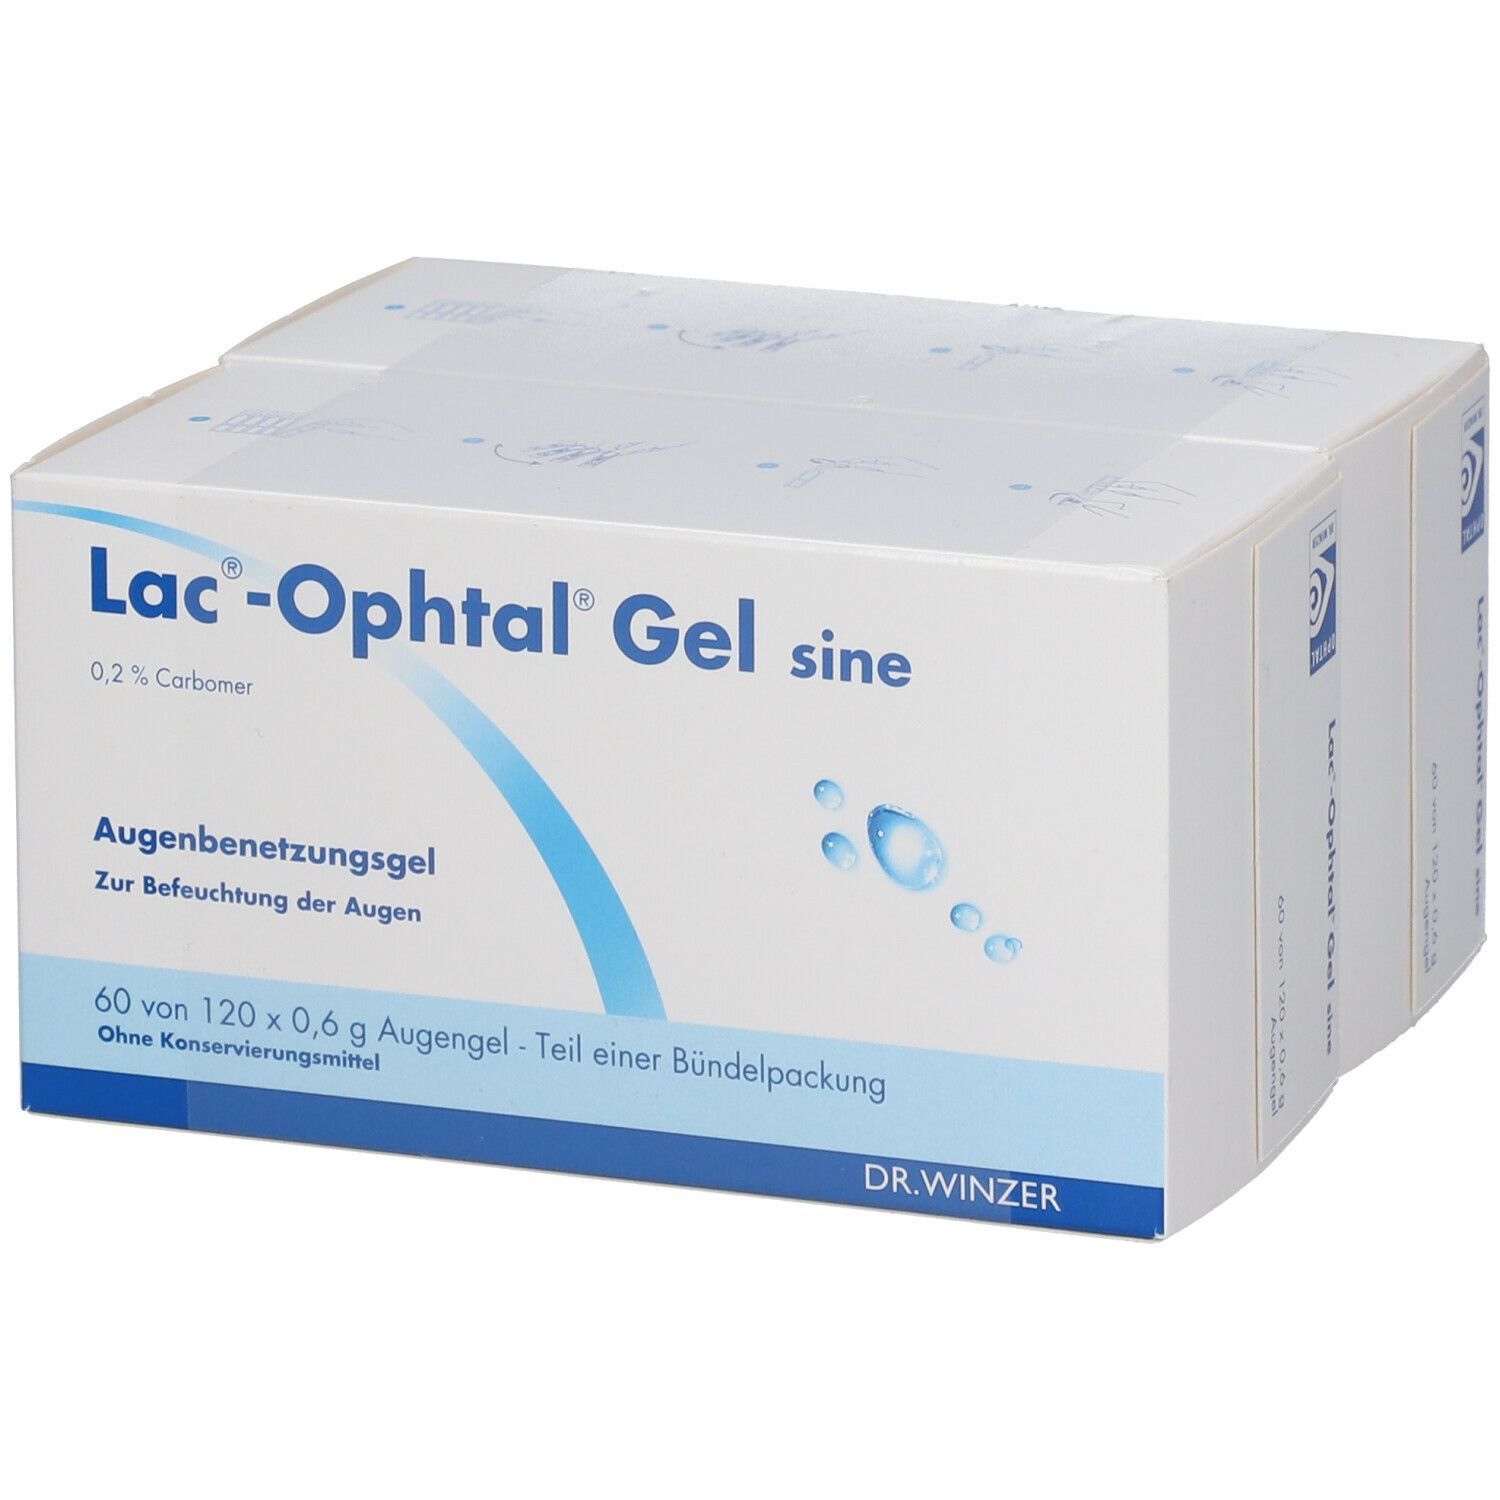 Lac®-Ophtal® Gel sine